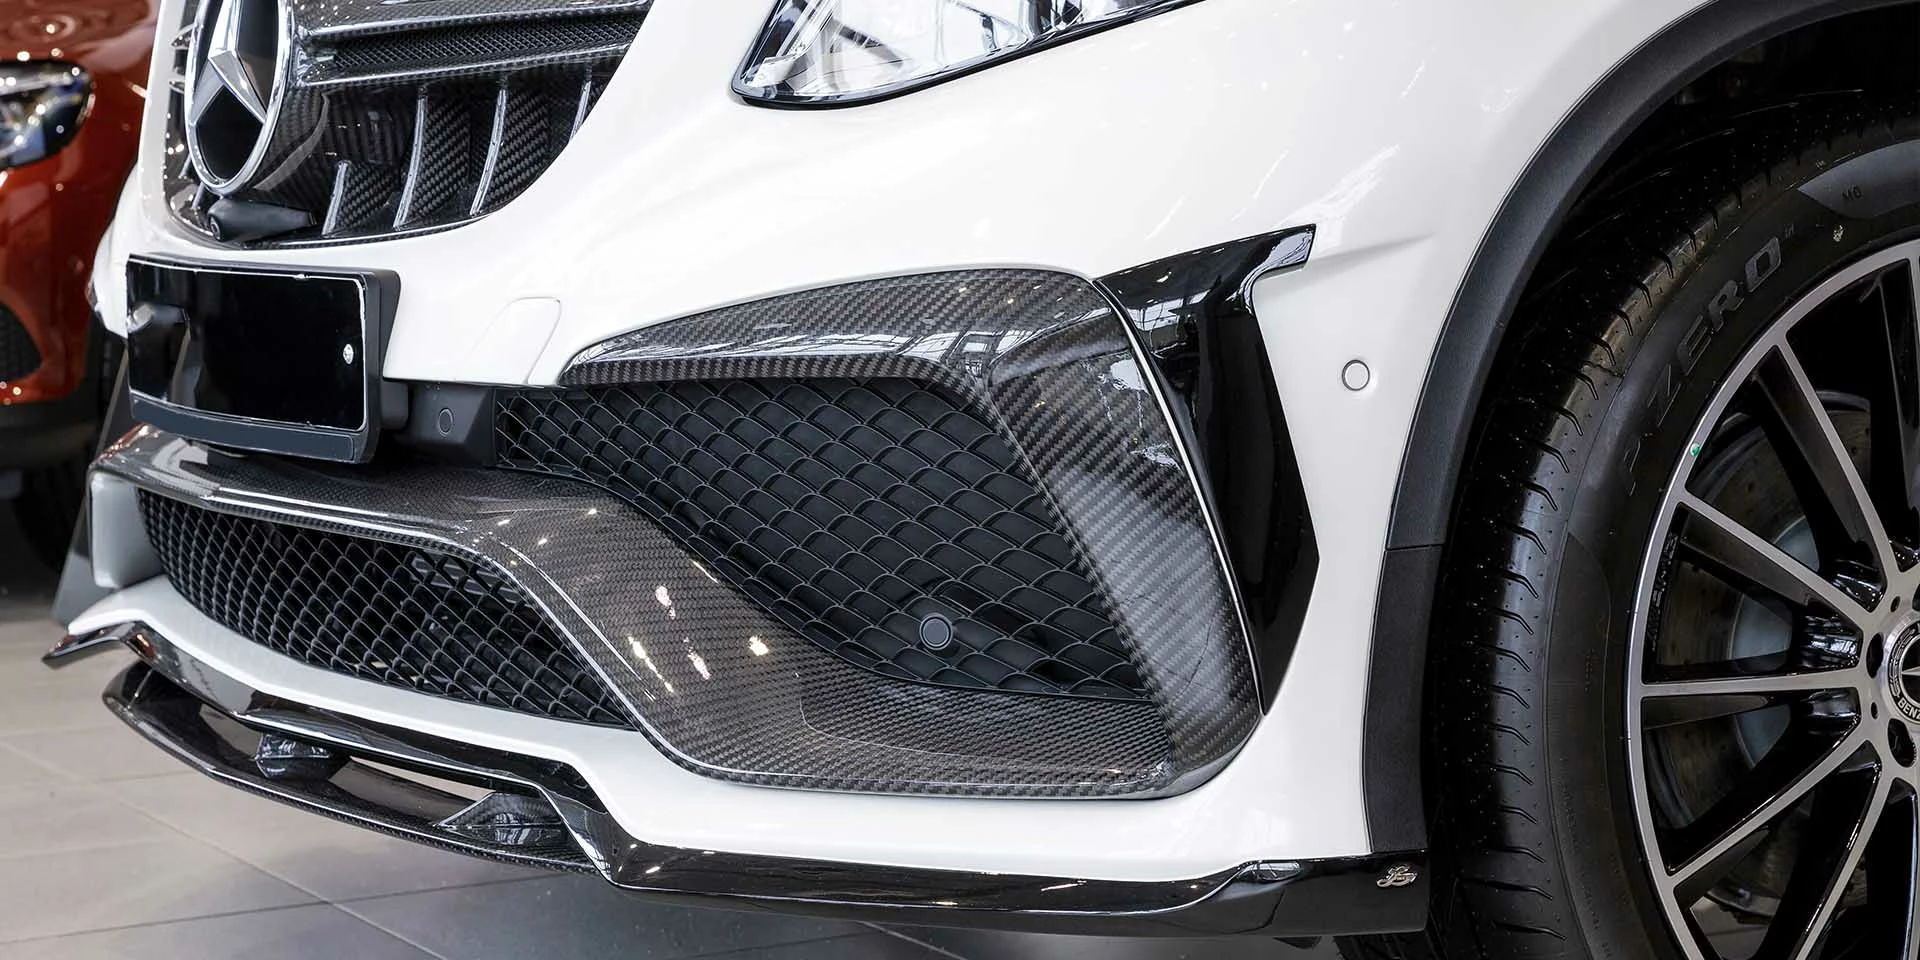 Fahrzeugumbau Frontlippe für Winner für Mercedes Benz GLE Coupe C292 2014 - 2020